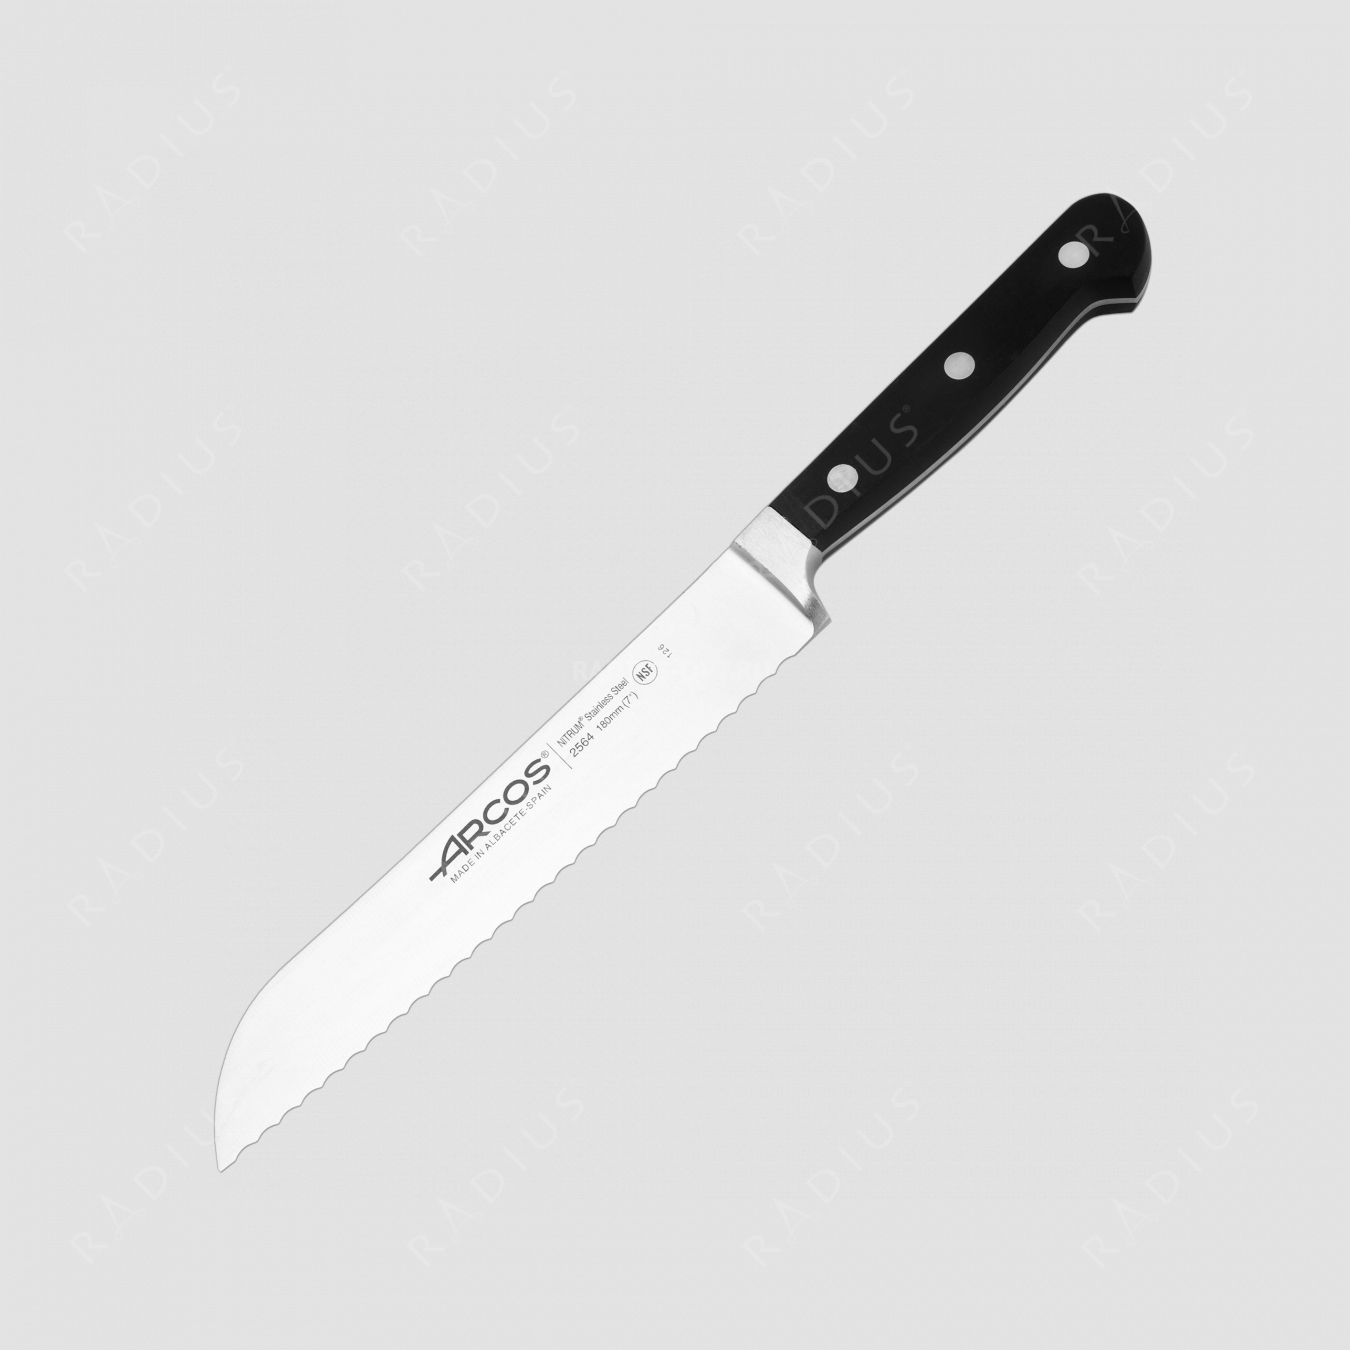 Нож кухонный для хлеба 18 см, серия Clasica, ARCOS, Испания